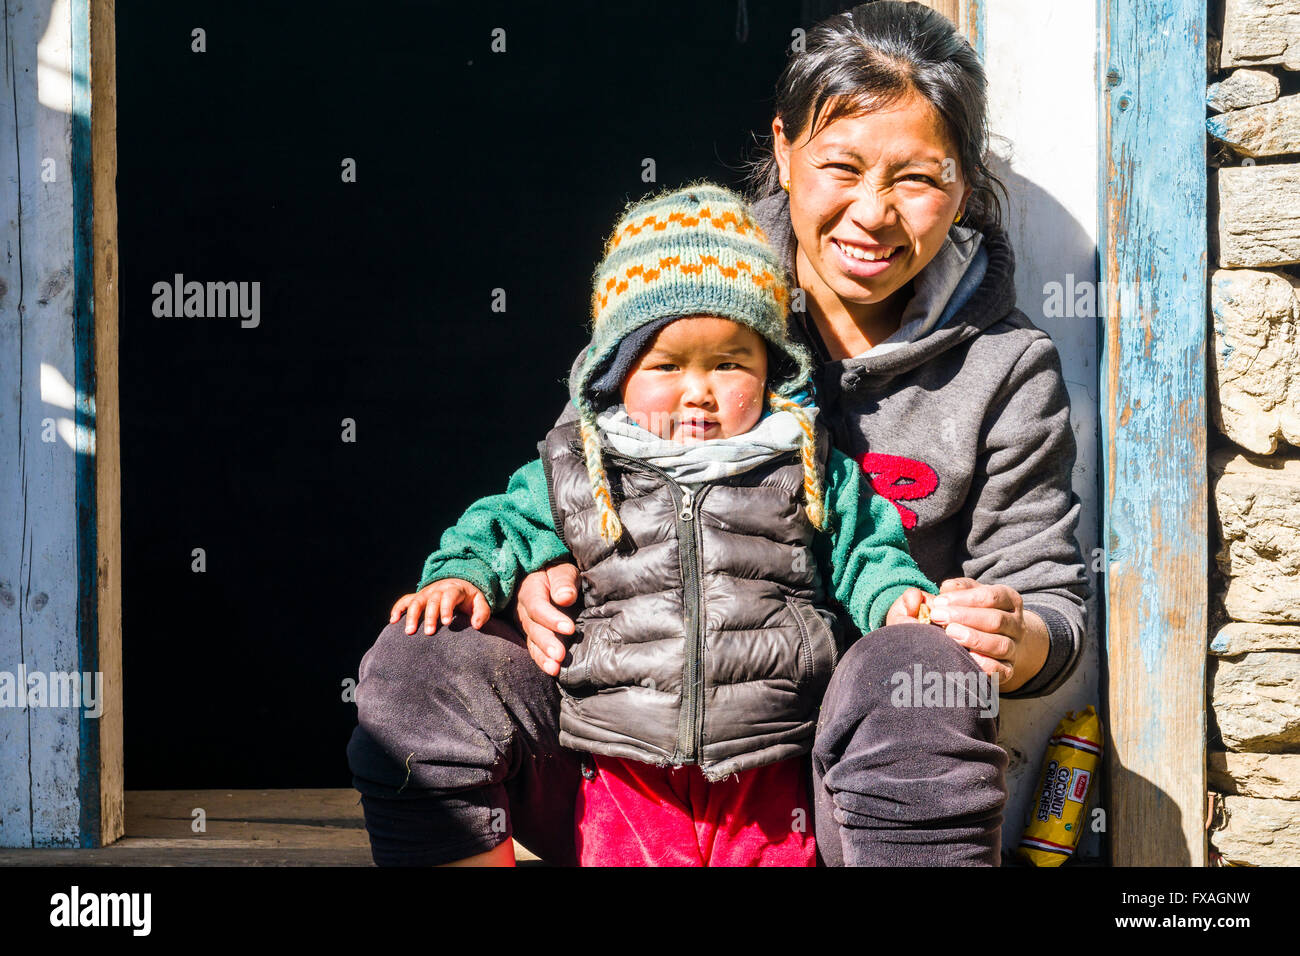 Portrait of a smiling young nepali mère avec son enfant assis dans une embrasure, Chheplung, Solo Khumbu, Népal Banque D'Images